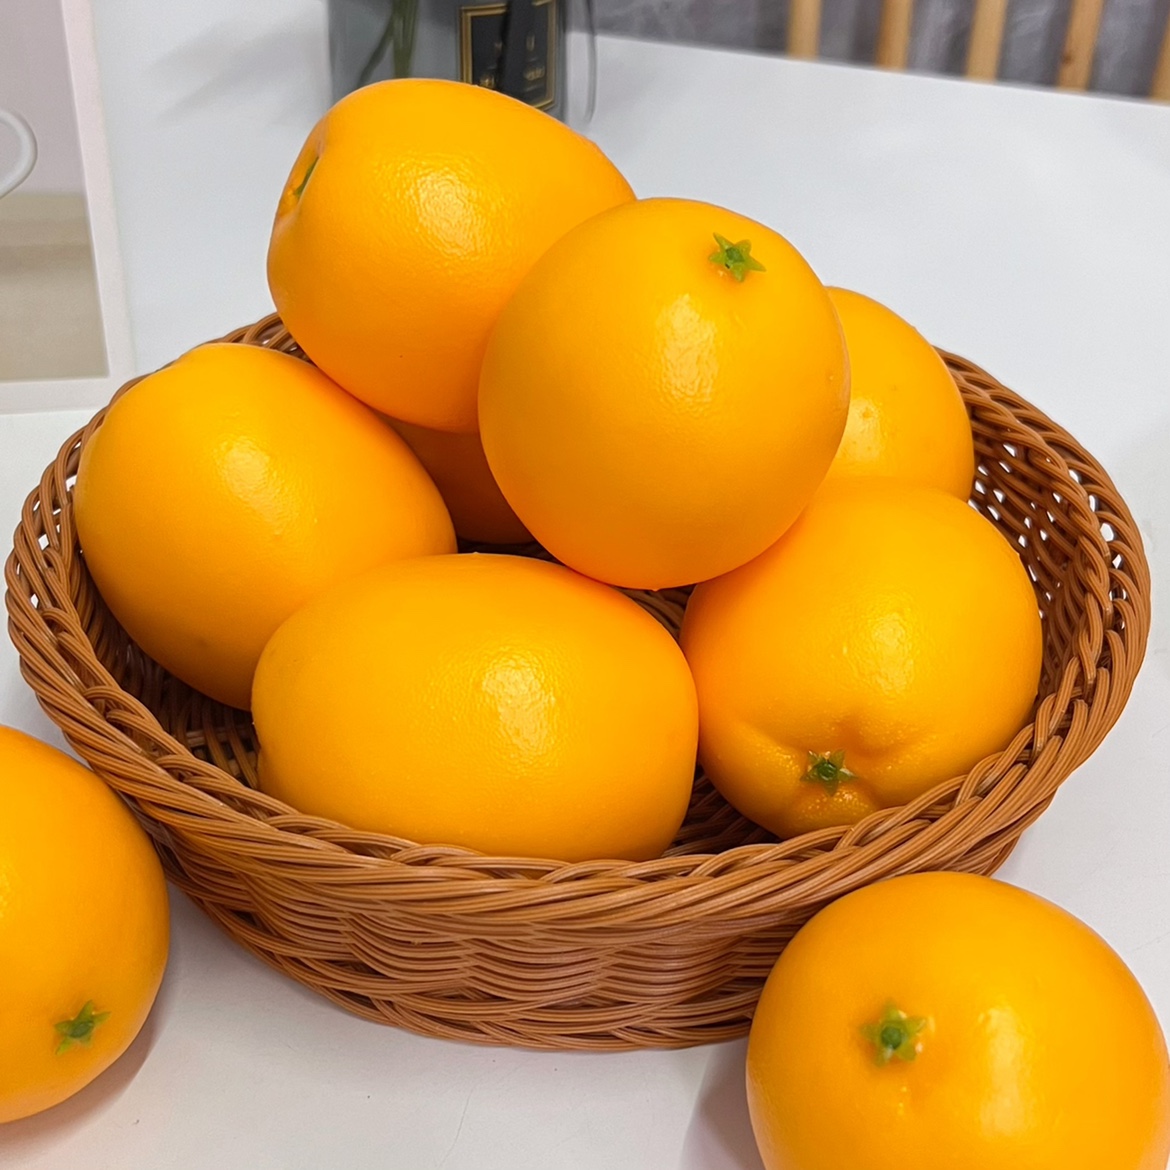 仿真水果模型橙子西柚食物道具果蔬摆件食品装饰家居橱柜装饰玩具